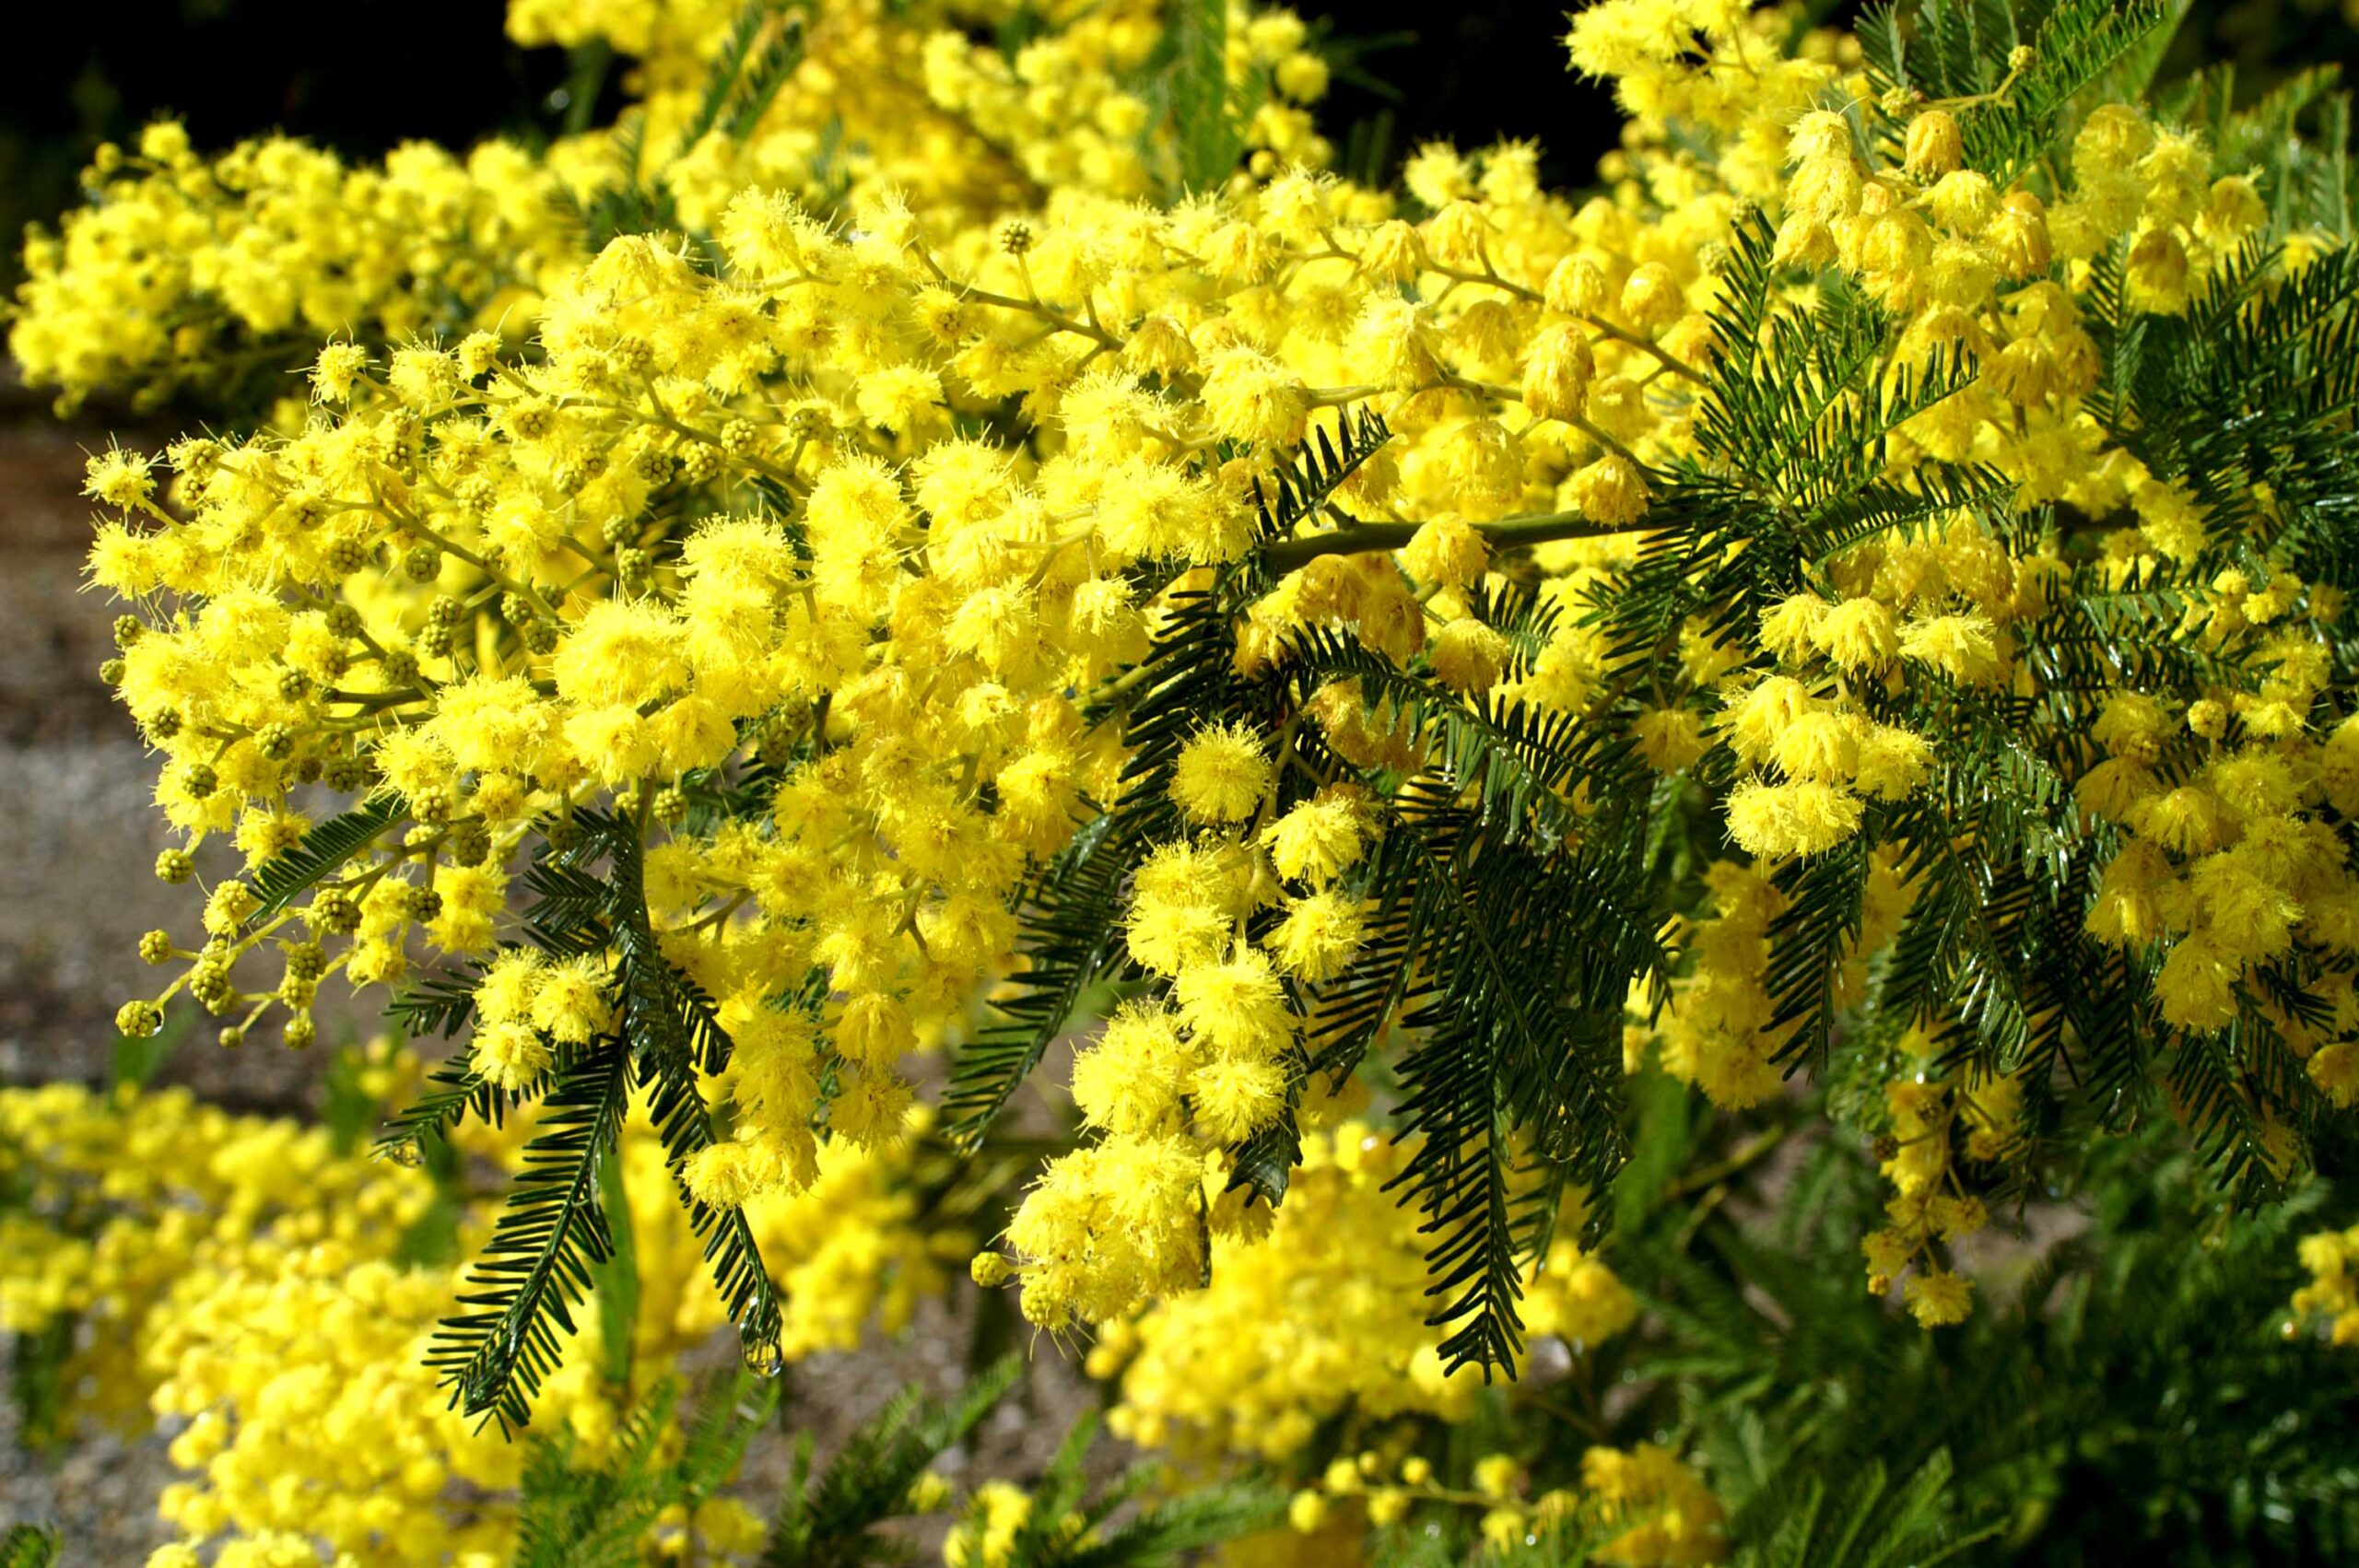 Acacia Tree Medicinal Uses